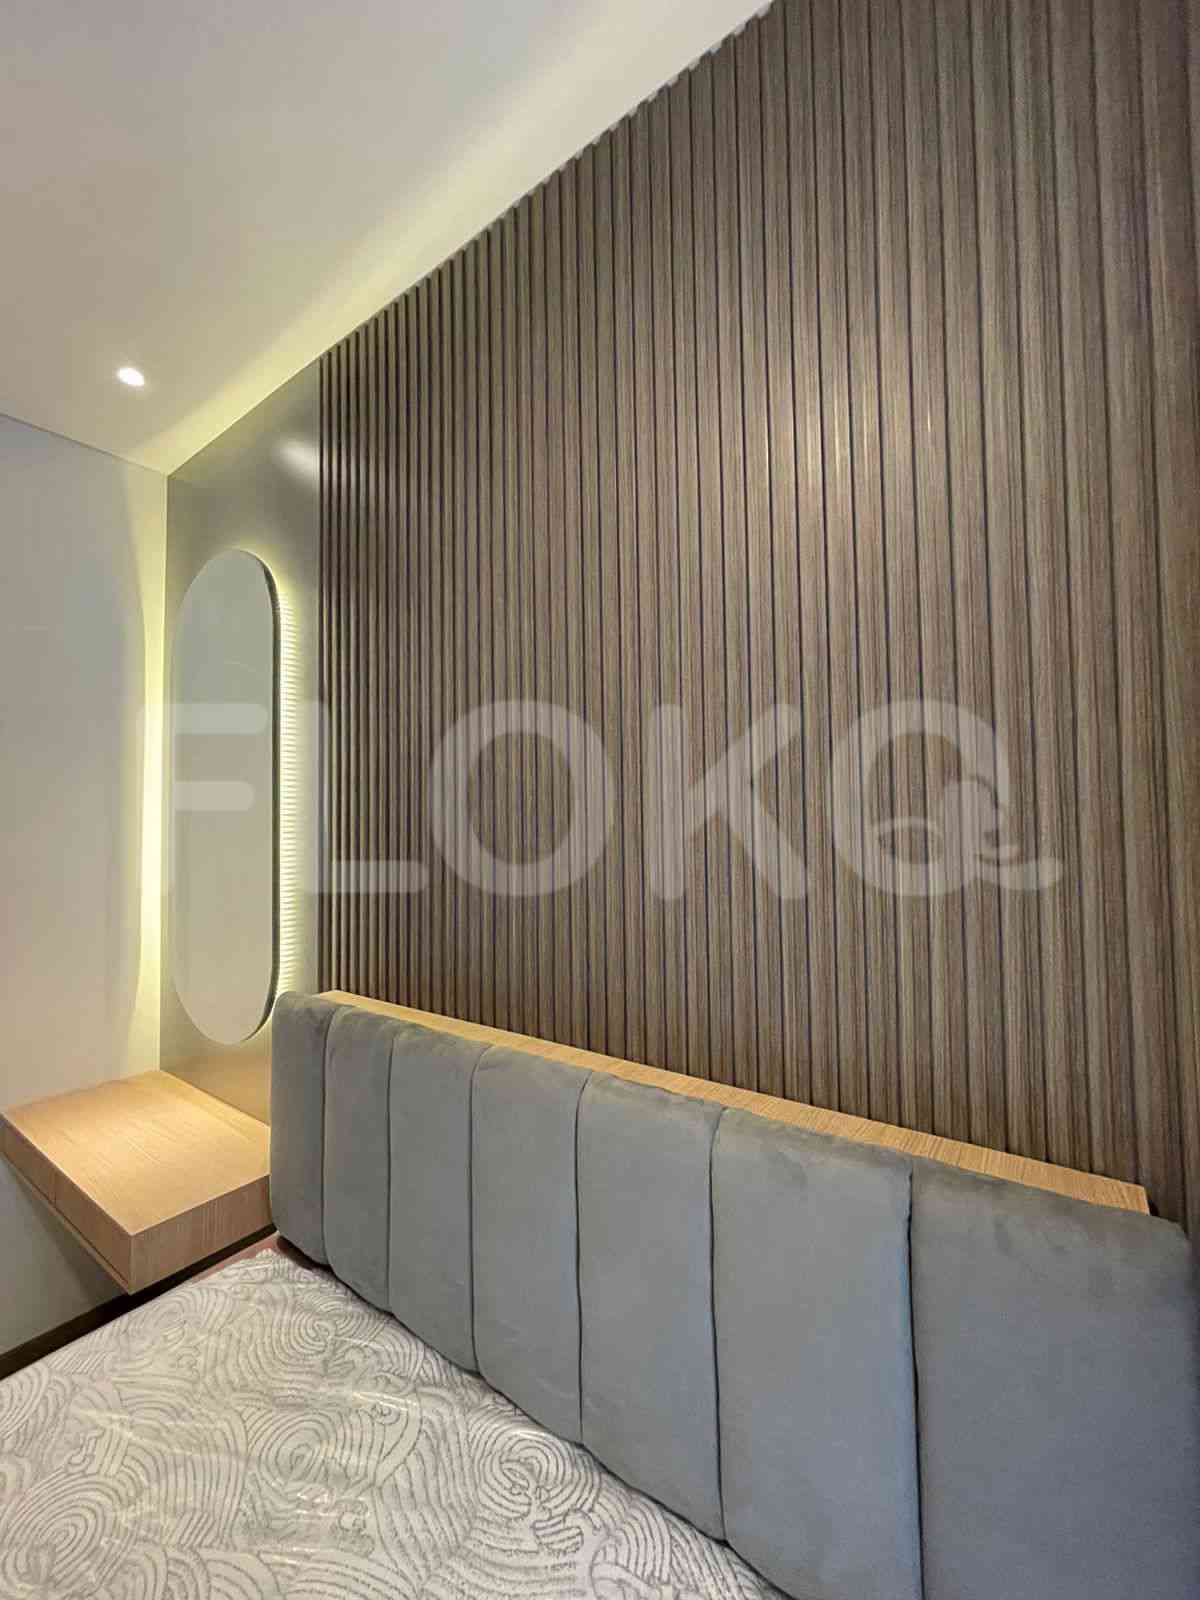 3 Bedroom on 10th Floor for Rent in Sudirman Suites Jakarta - fsuaf7 15